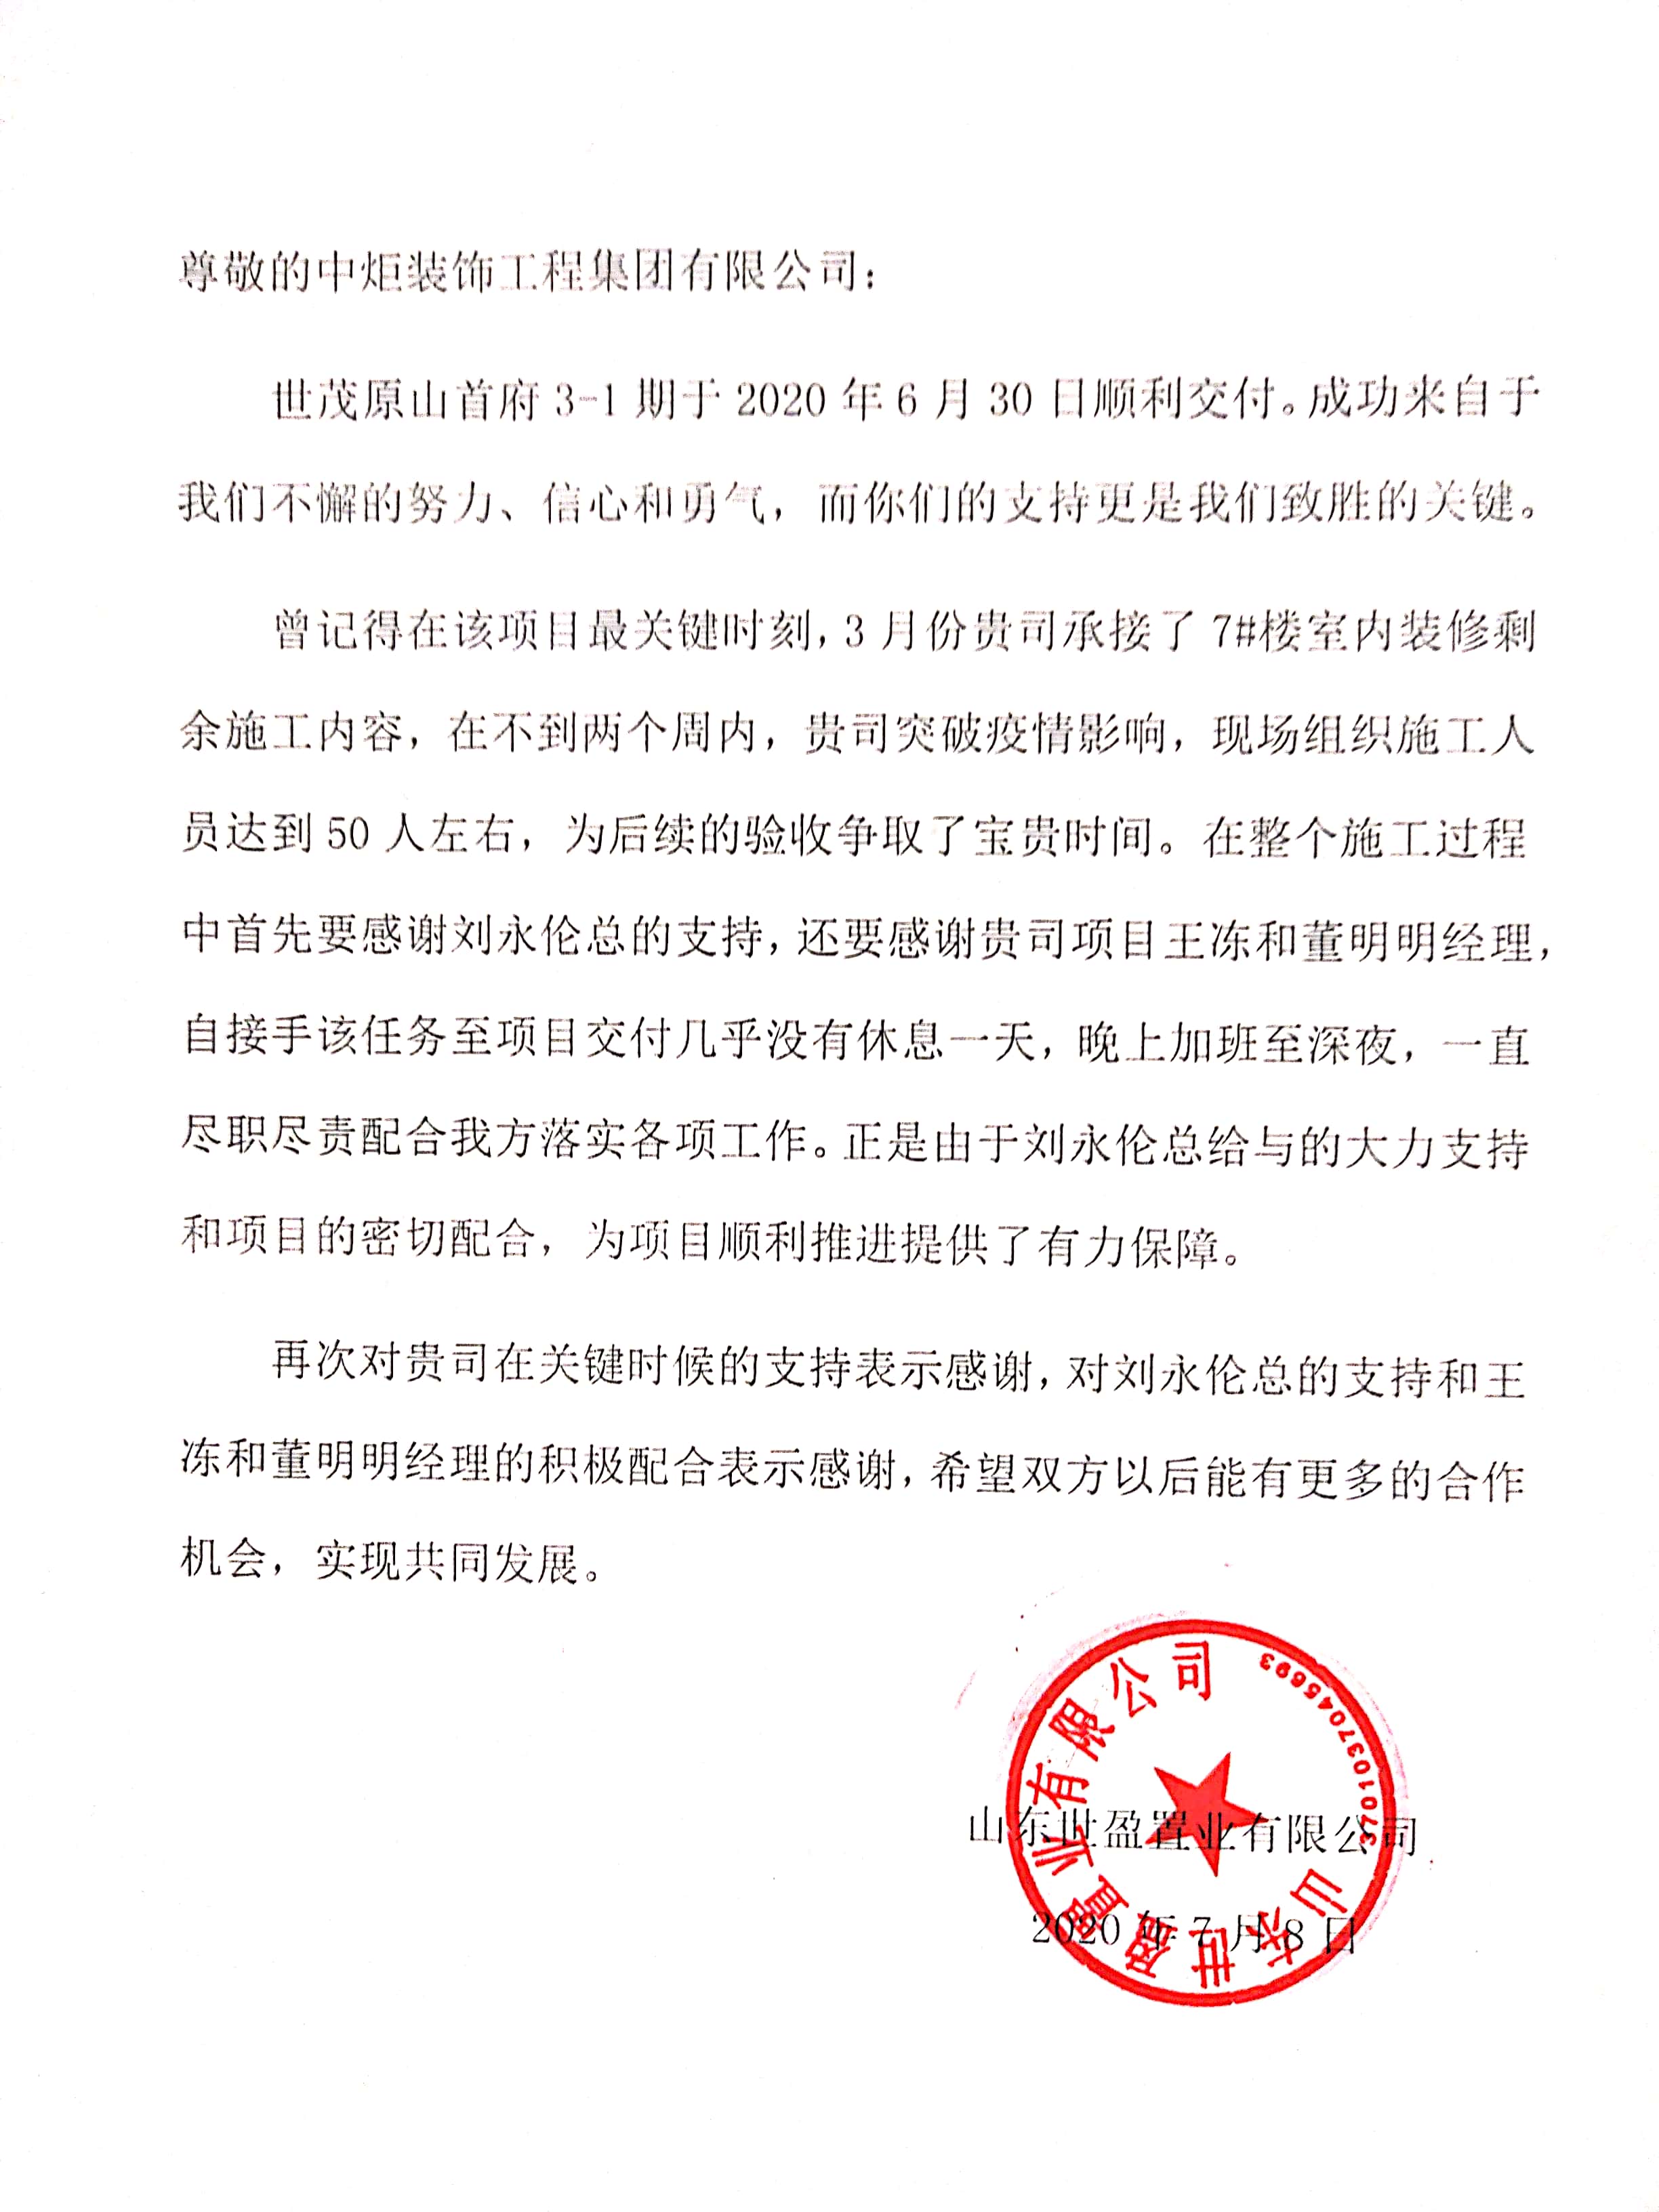 关于取消经销商的公告函 - 广西中路固得贸易有限公司